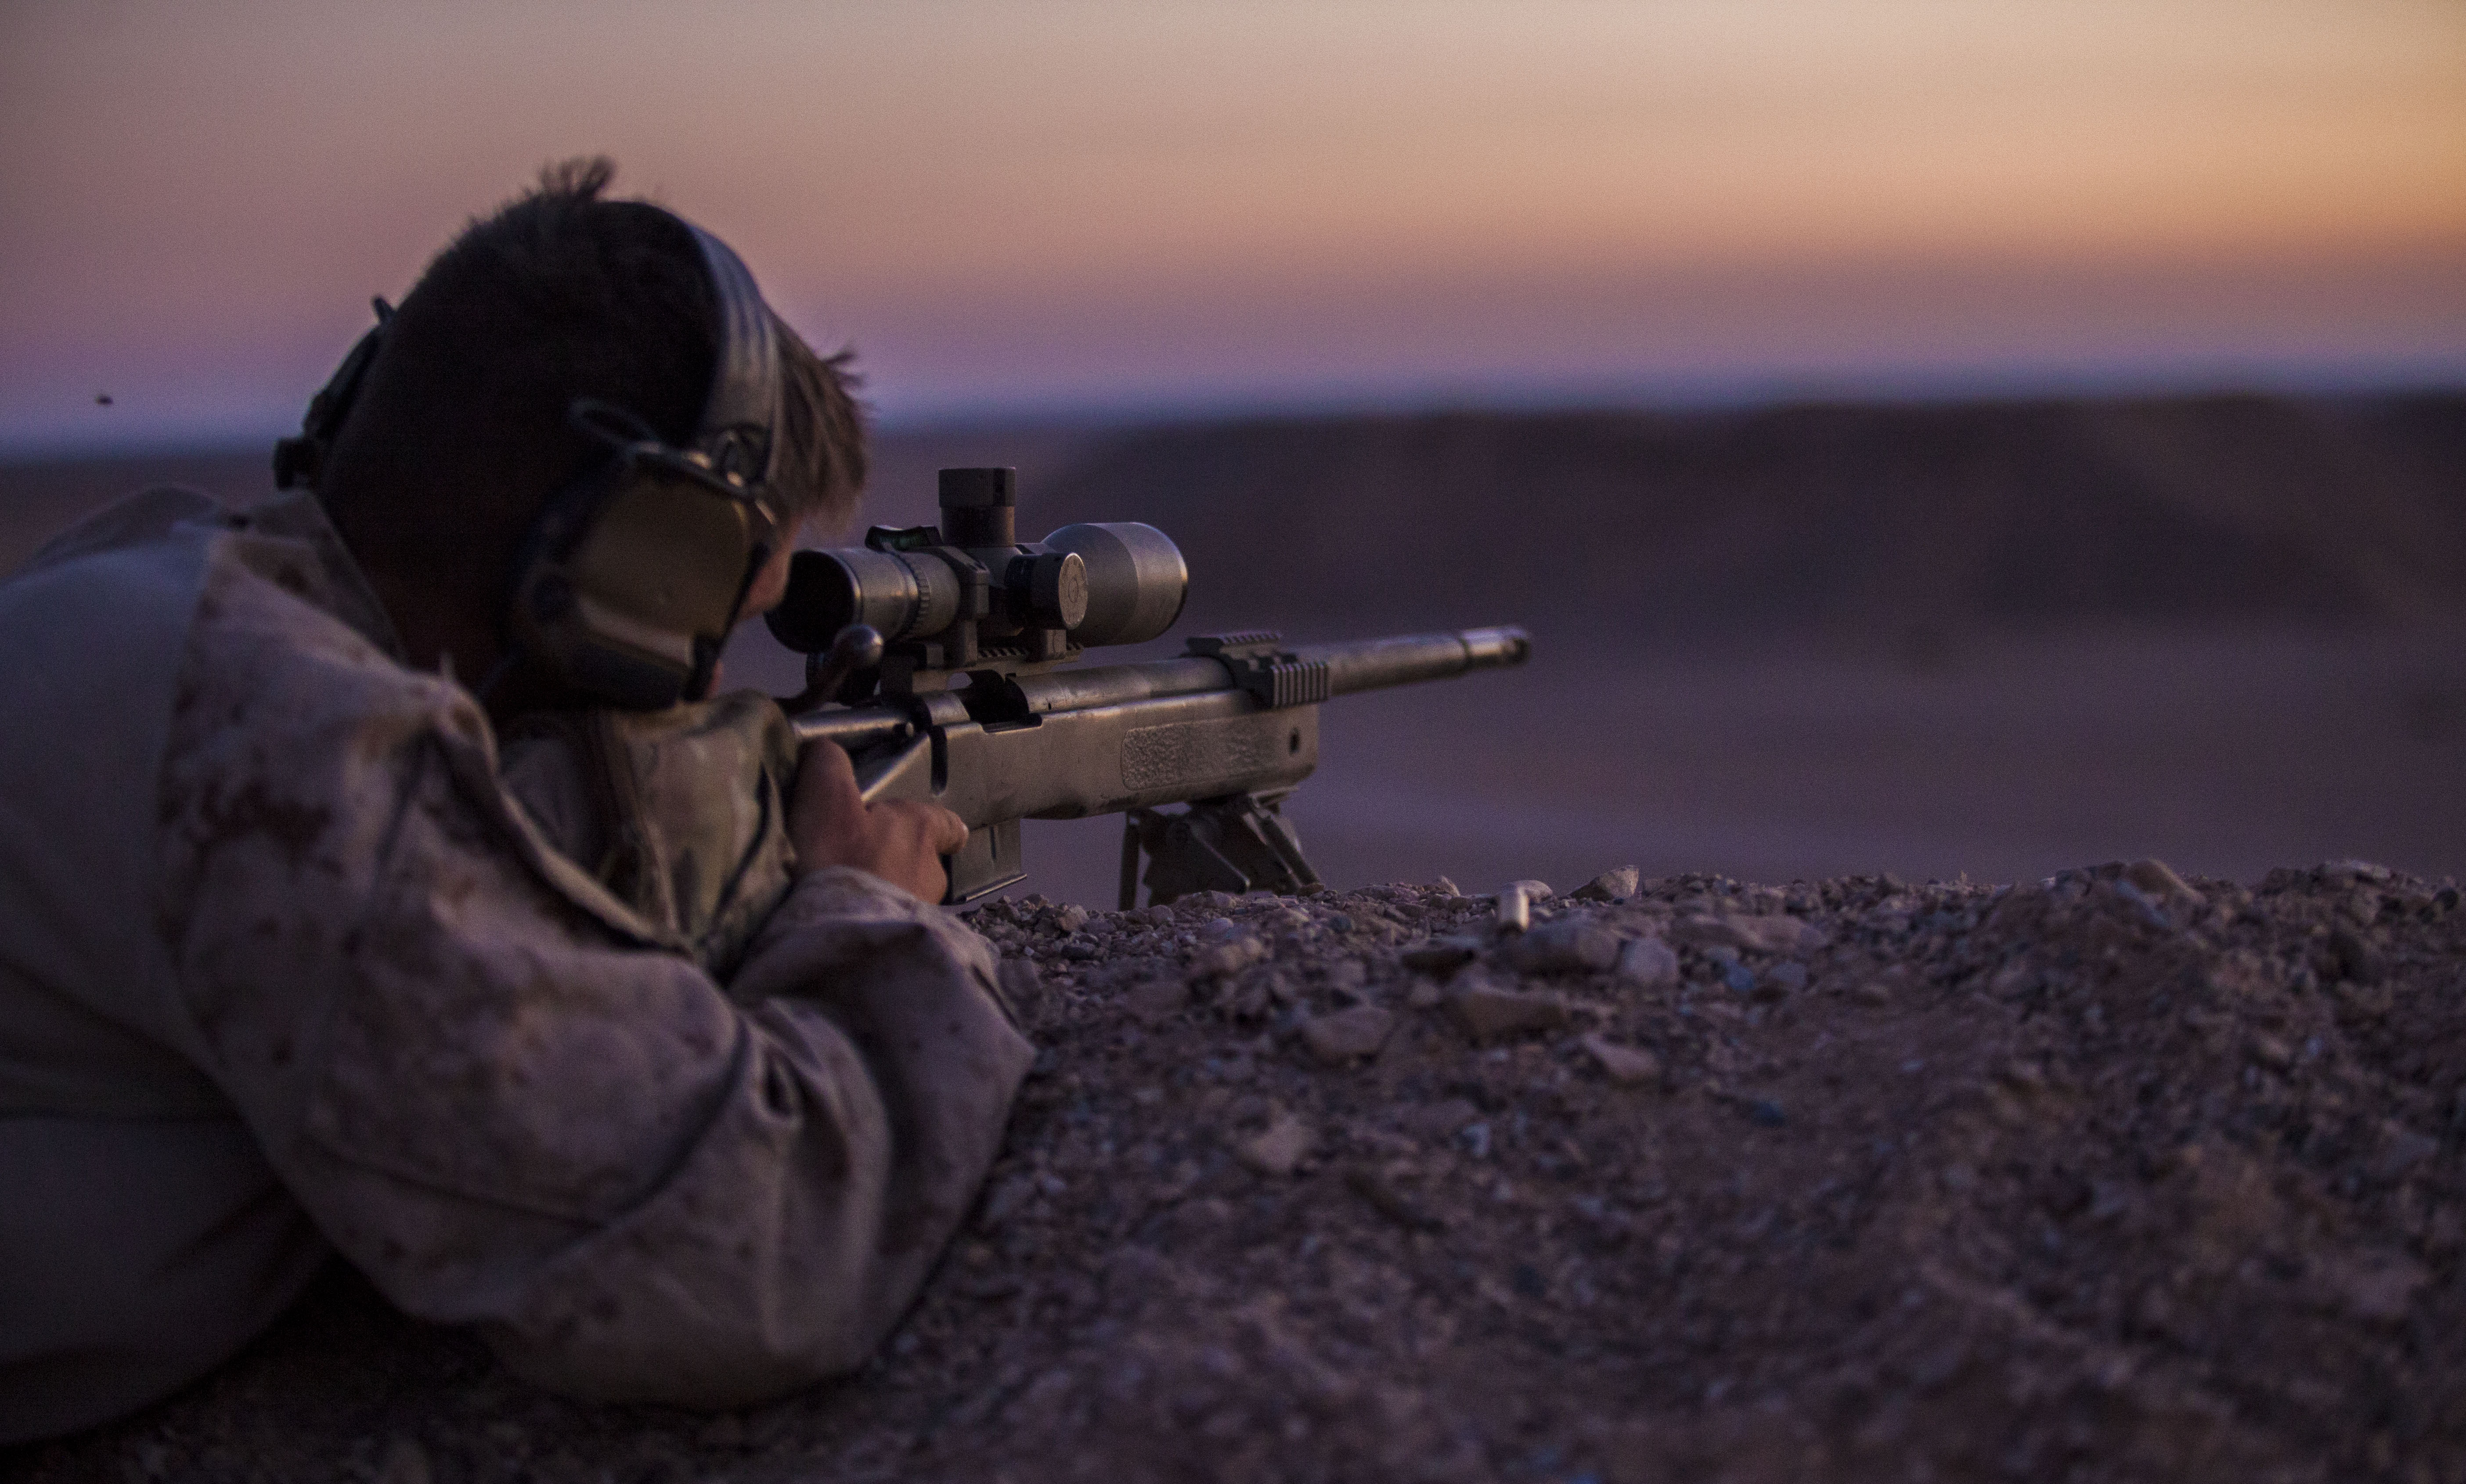 Снайперы секунду назад. M40a5 морской пехоты США. Роберт Фарлонг снайпер. Снайпер ночью. Взгляд снайпера.